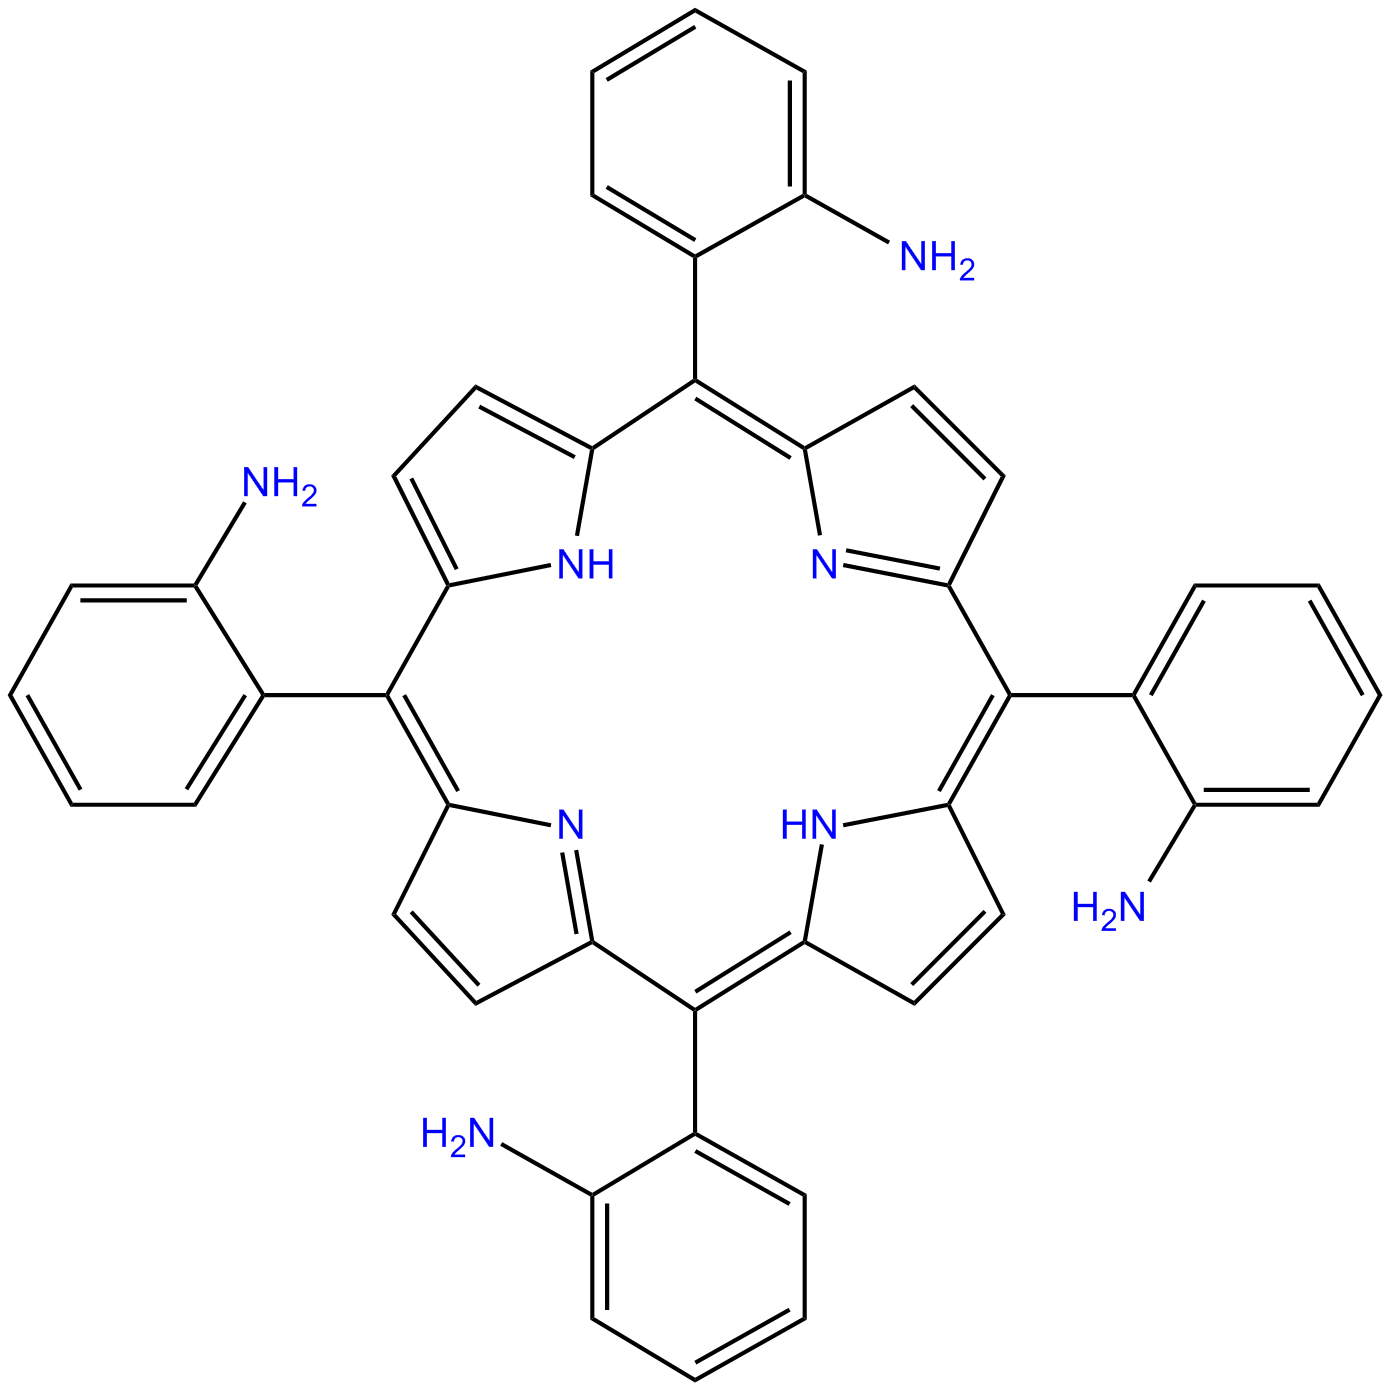 Image of meso-tetra(o-aminophenyl)porphyrin